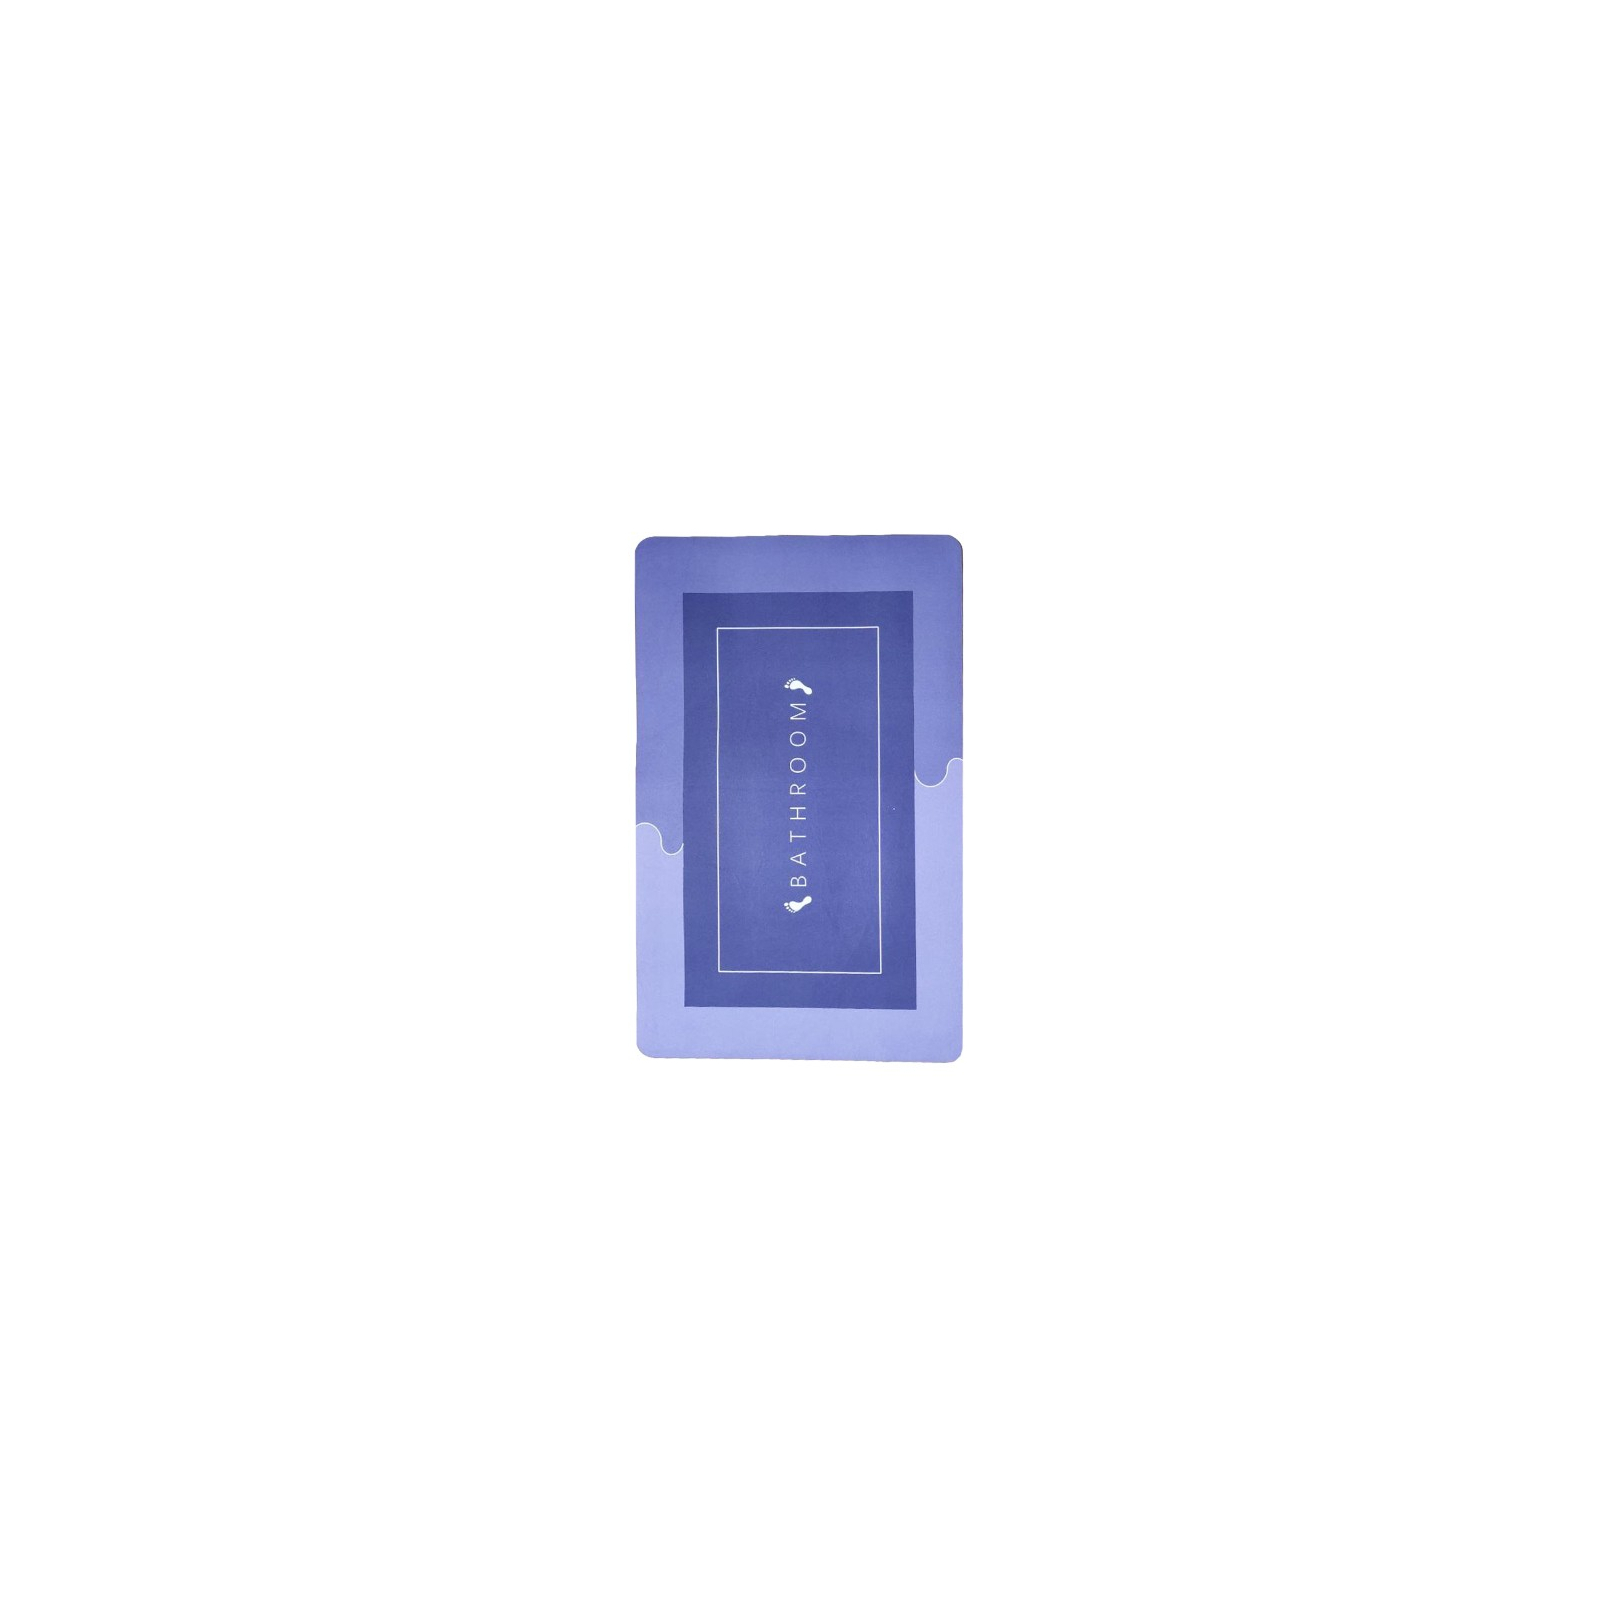 Коврик для ванной Stenson суперпоглощающий 40 х 60 см прямоугольный фиолетово-голубой (R30937 violet-blue) изображение 2